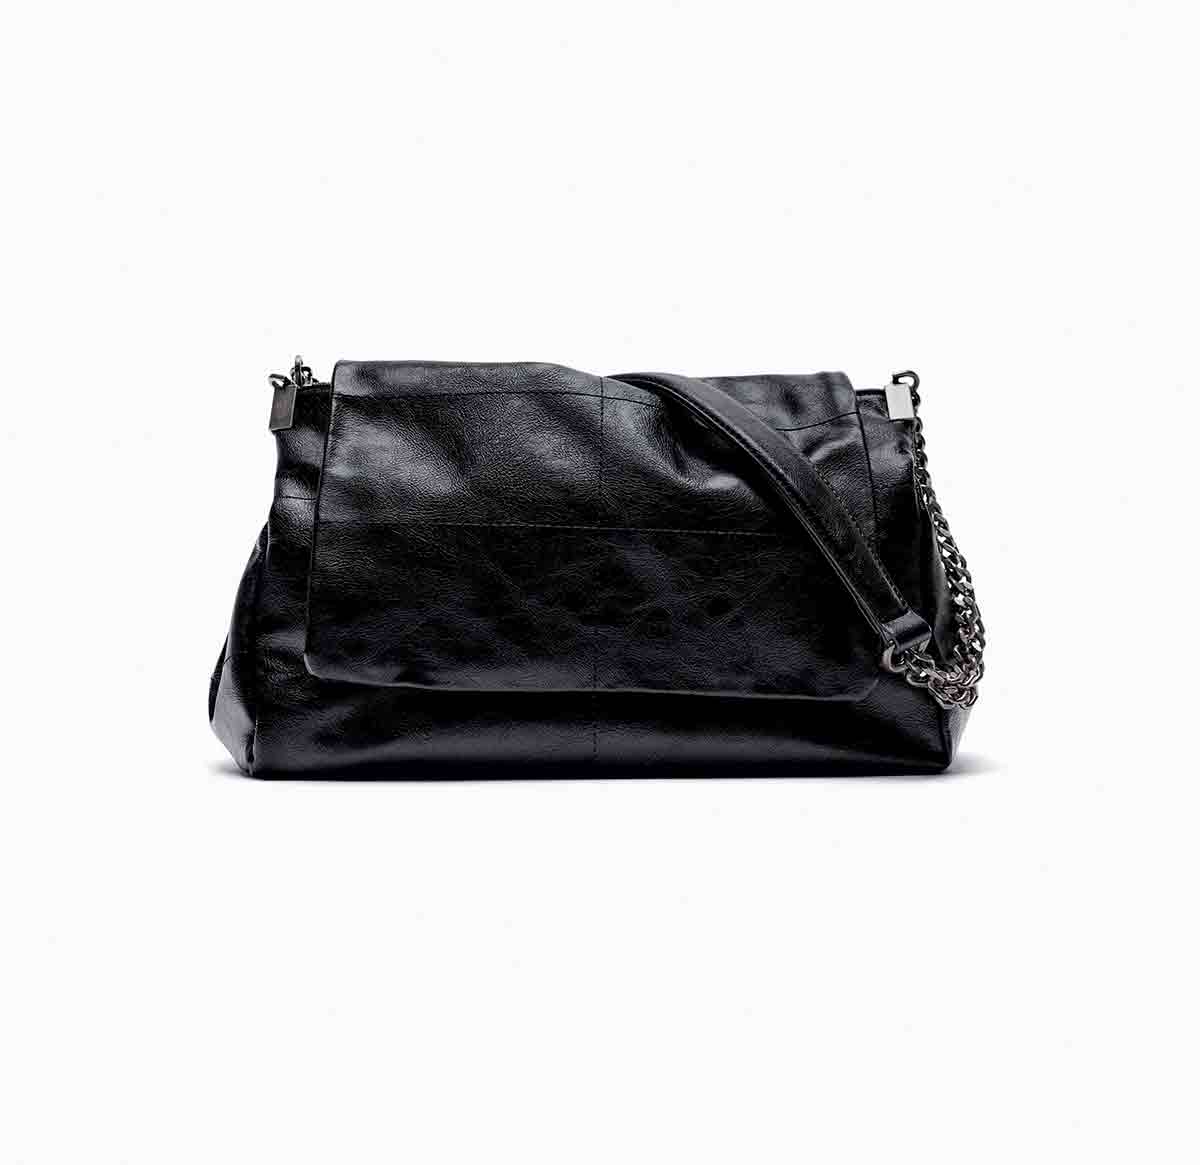 Bolso negro de Zara